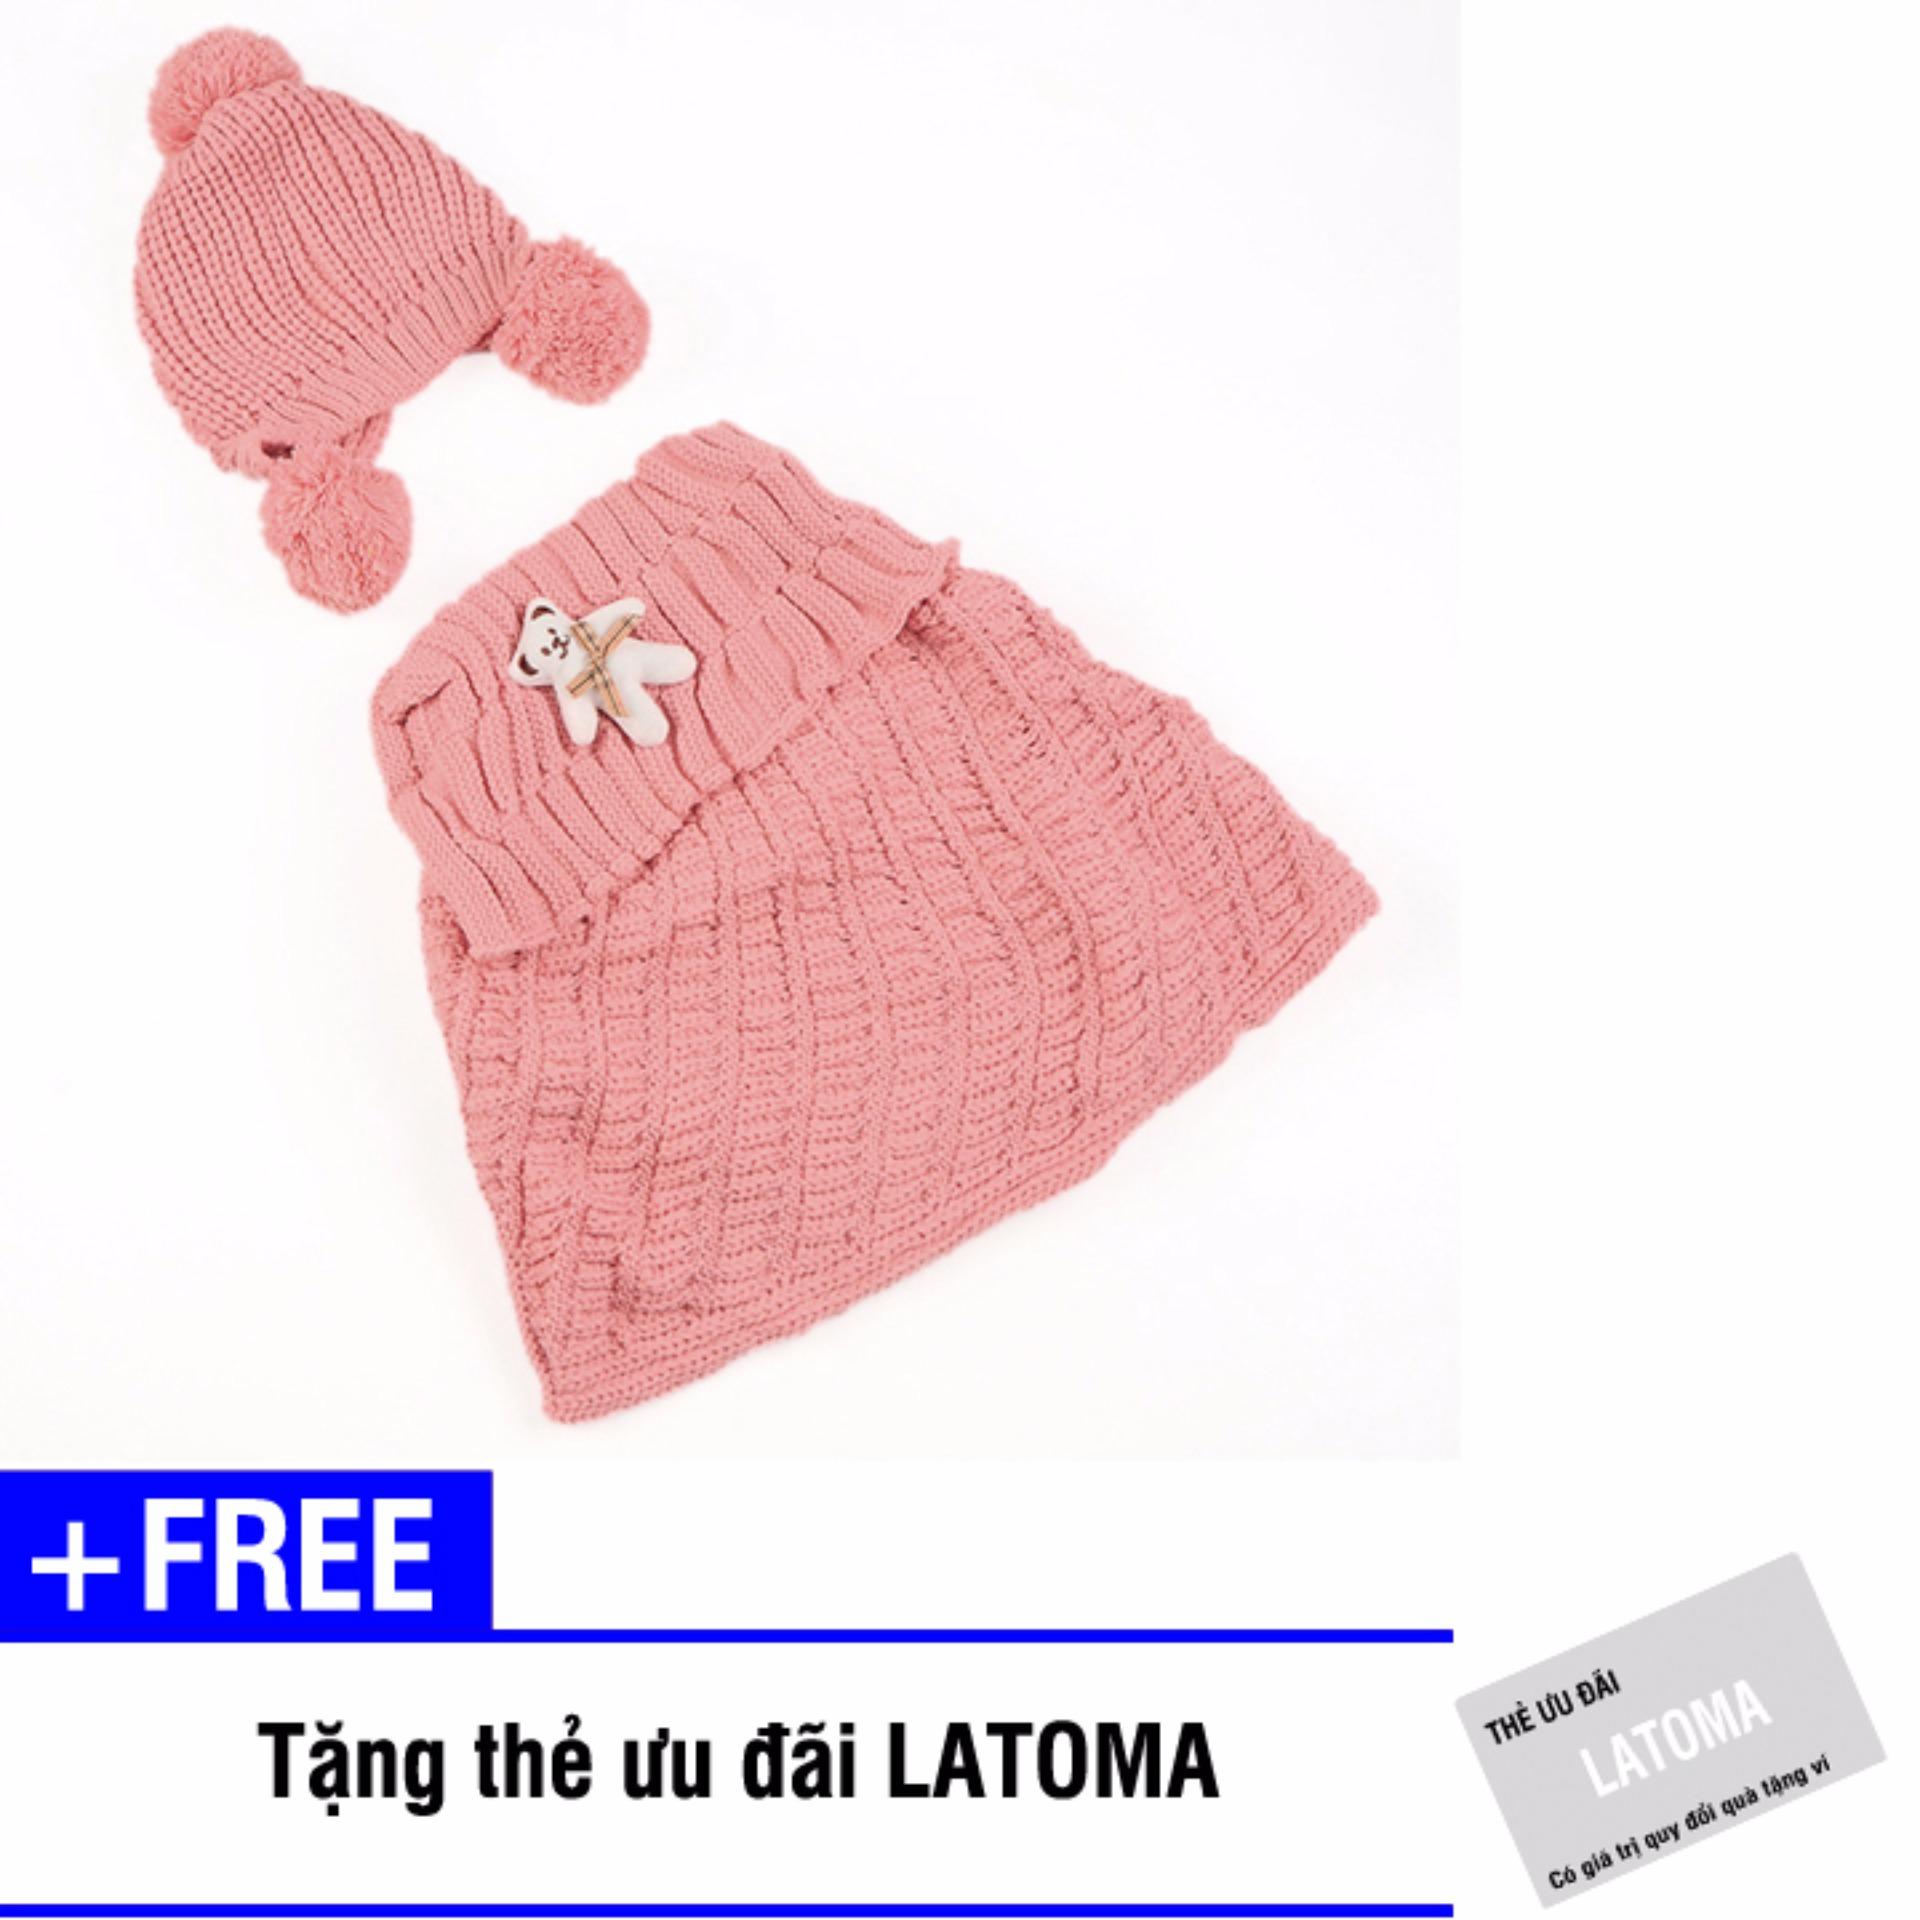 Bộ mũ len và áo quây bé gái Latoma S1403 (Hồng) + Tặng kèm thẻ ưu đãi Latoma